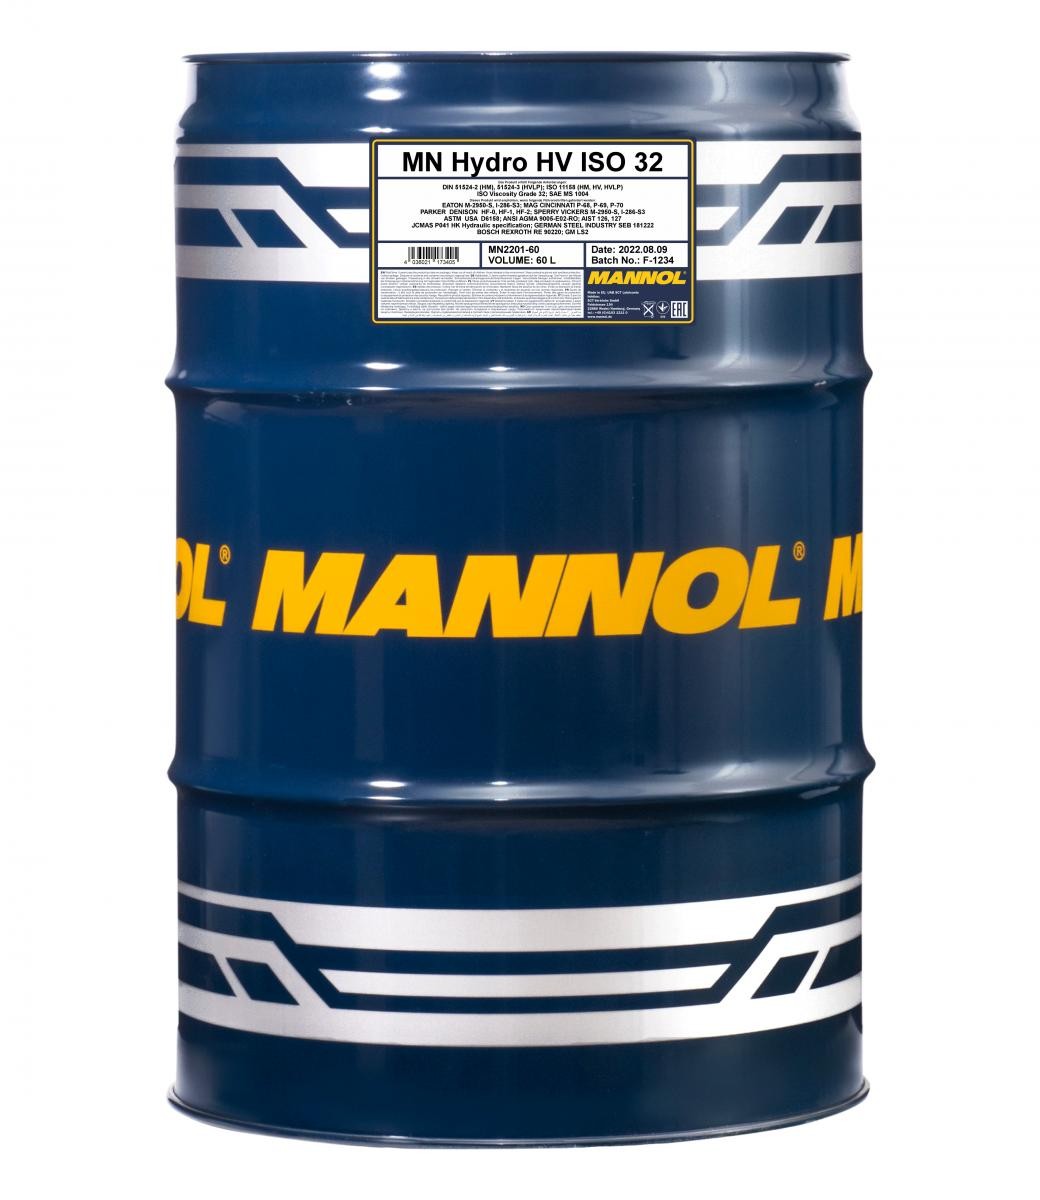 MANNOL Hydro HV ISO 32 Central Hydraulic Oil MN2201-60 buy